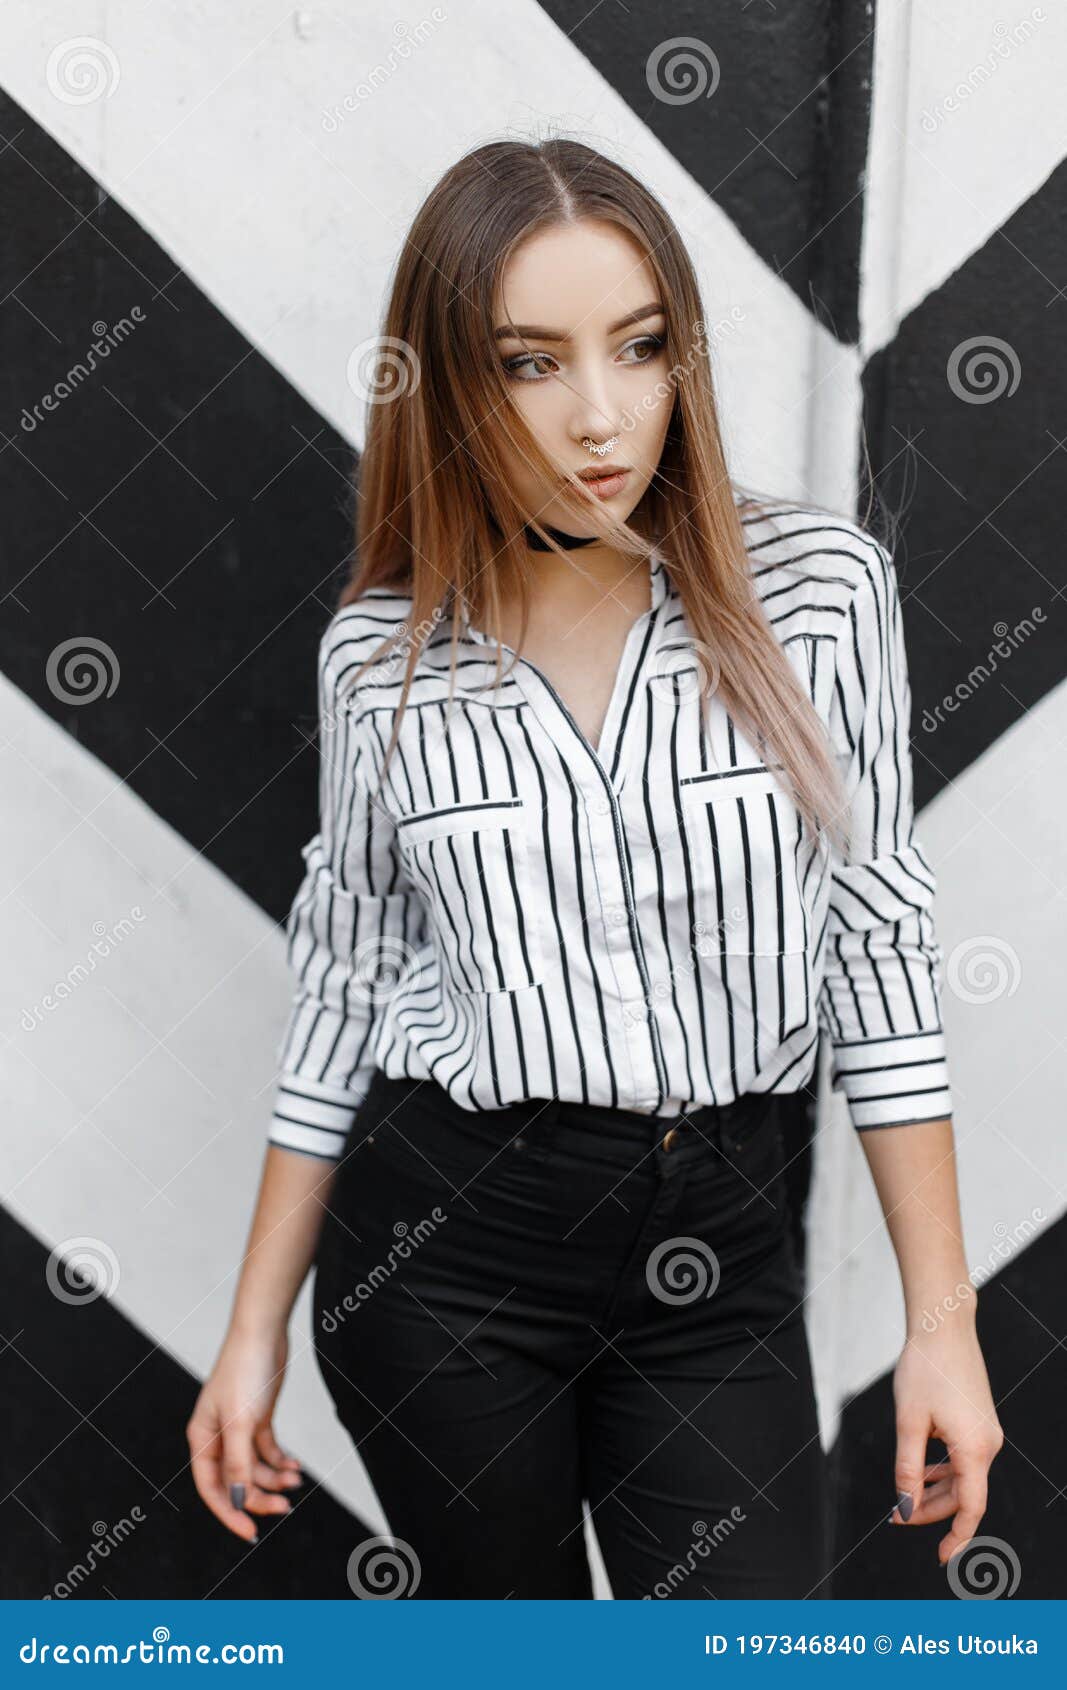 Atractiva Y Elegante Joven Mujer Pantalones Negros Y En Una Elegante Blusa En Una Tira Con Perforación En La Nariz Foto de archivo - Imagen de moderno, belleza: 197346840